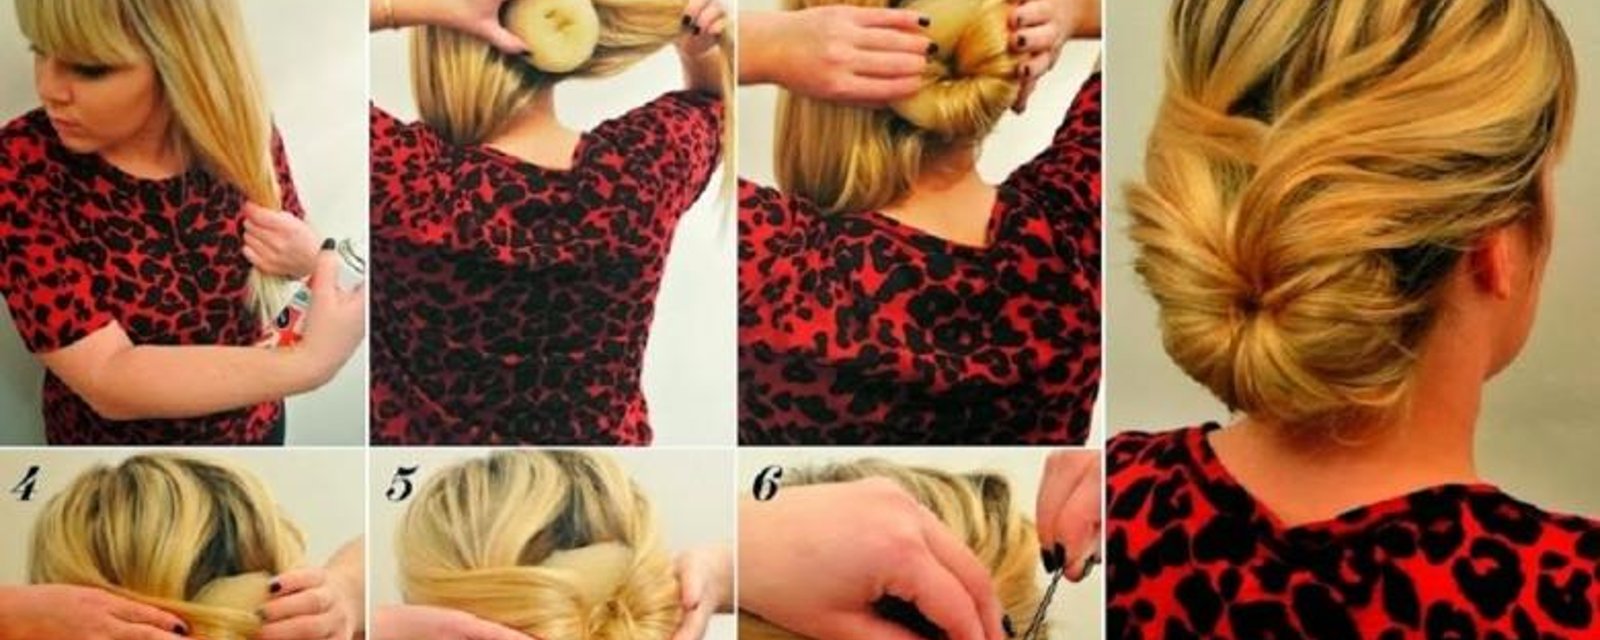 6 tutoriels photos pou rapprendre à se coiffer différemment!